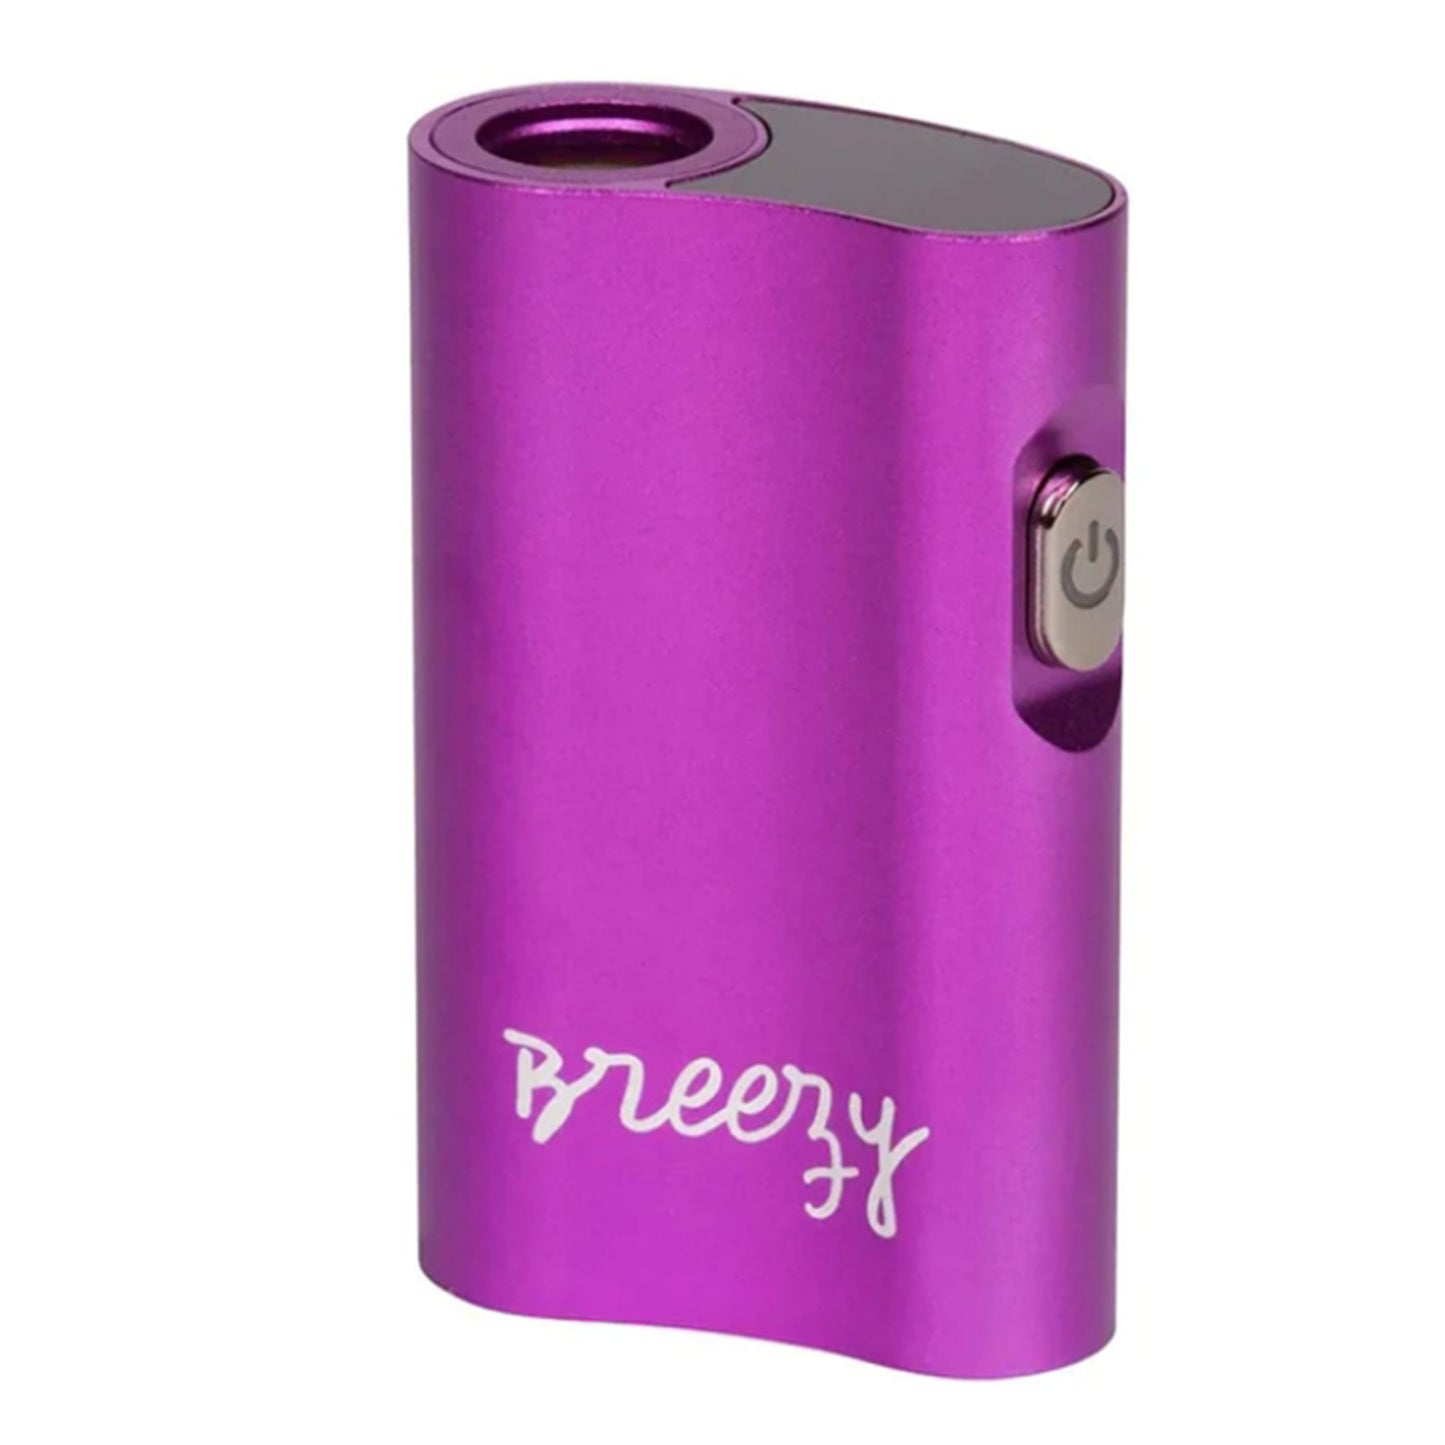 The Kind Pen BREEZY Vaporizer Mod Battery Best Sales Price - Vaporizers